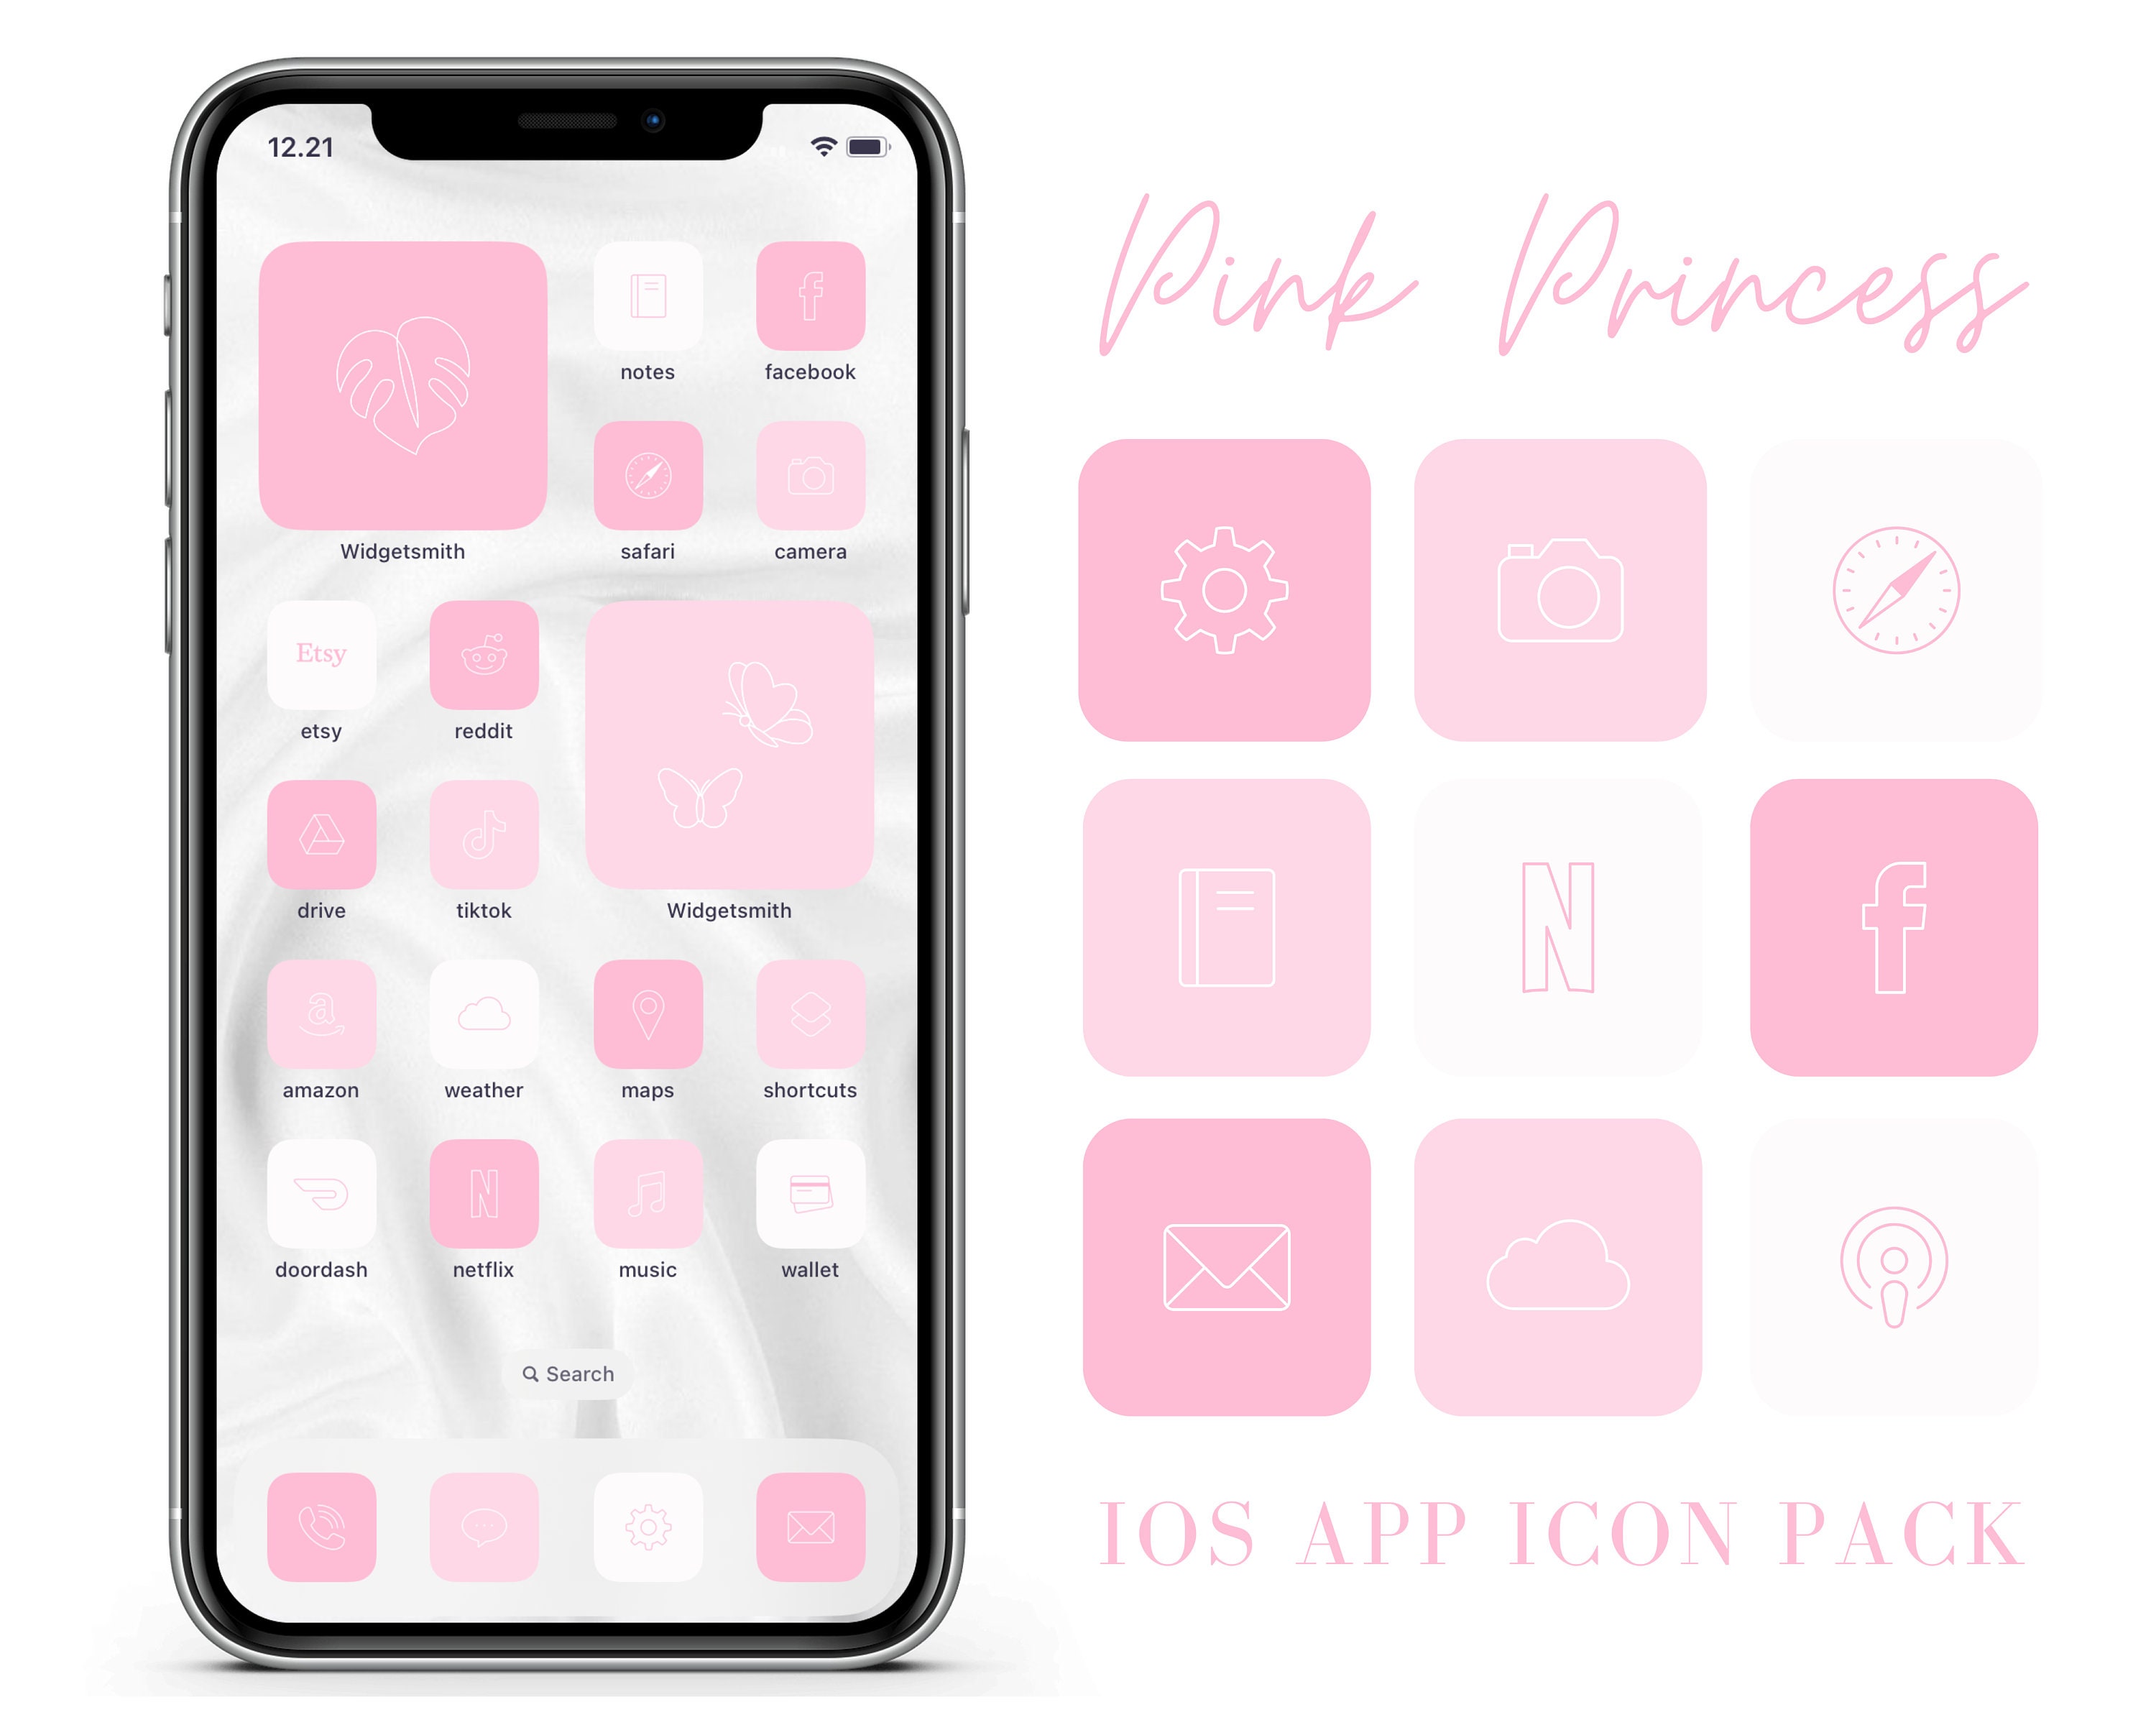 icon pastel》 on X: #icon #pastel #pink #white #victoria #secret   / X